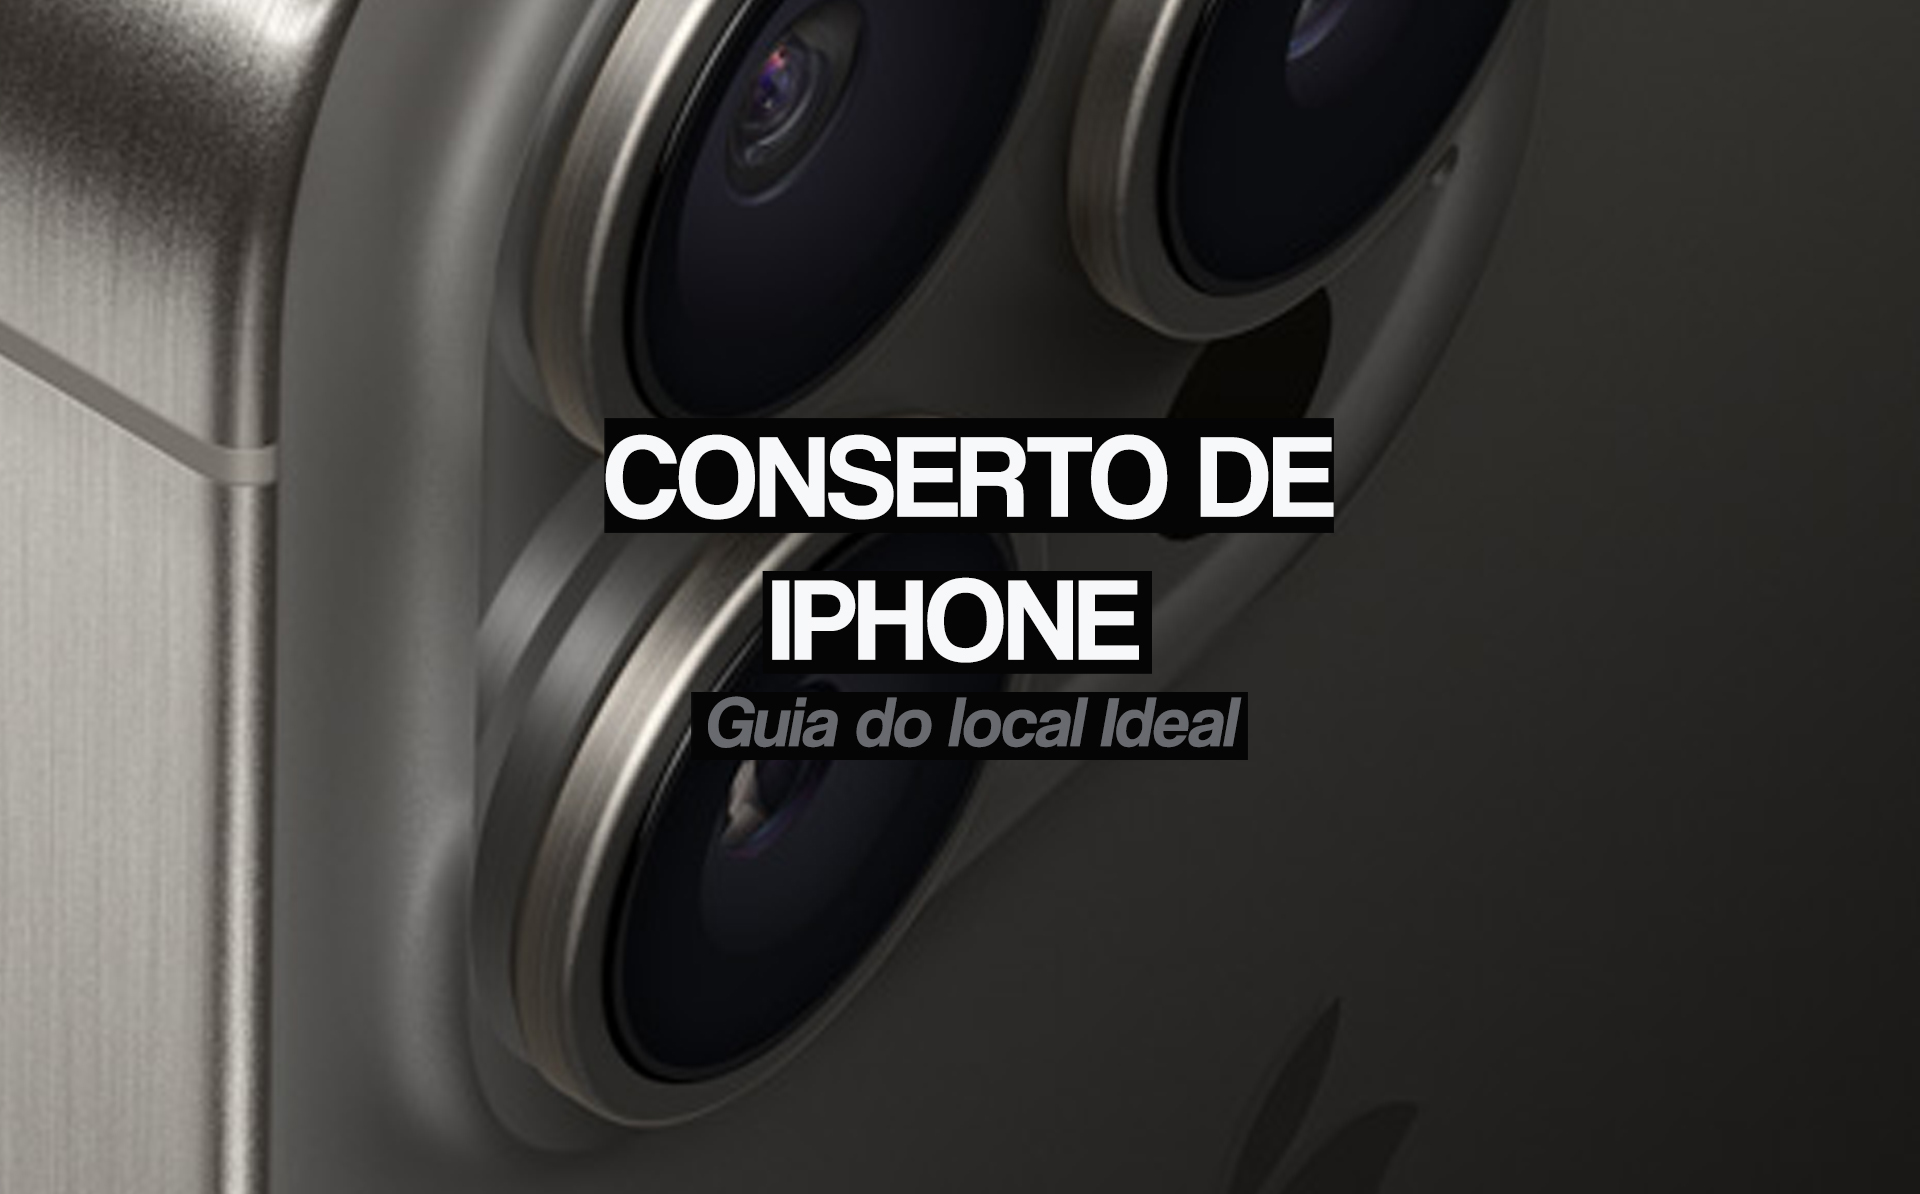 Conserto de iPhone: Guia do local Ideal